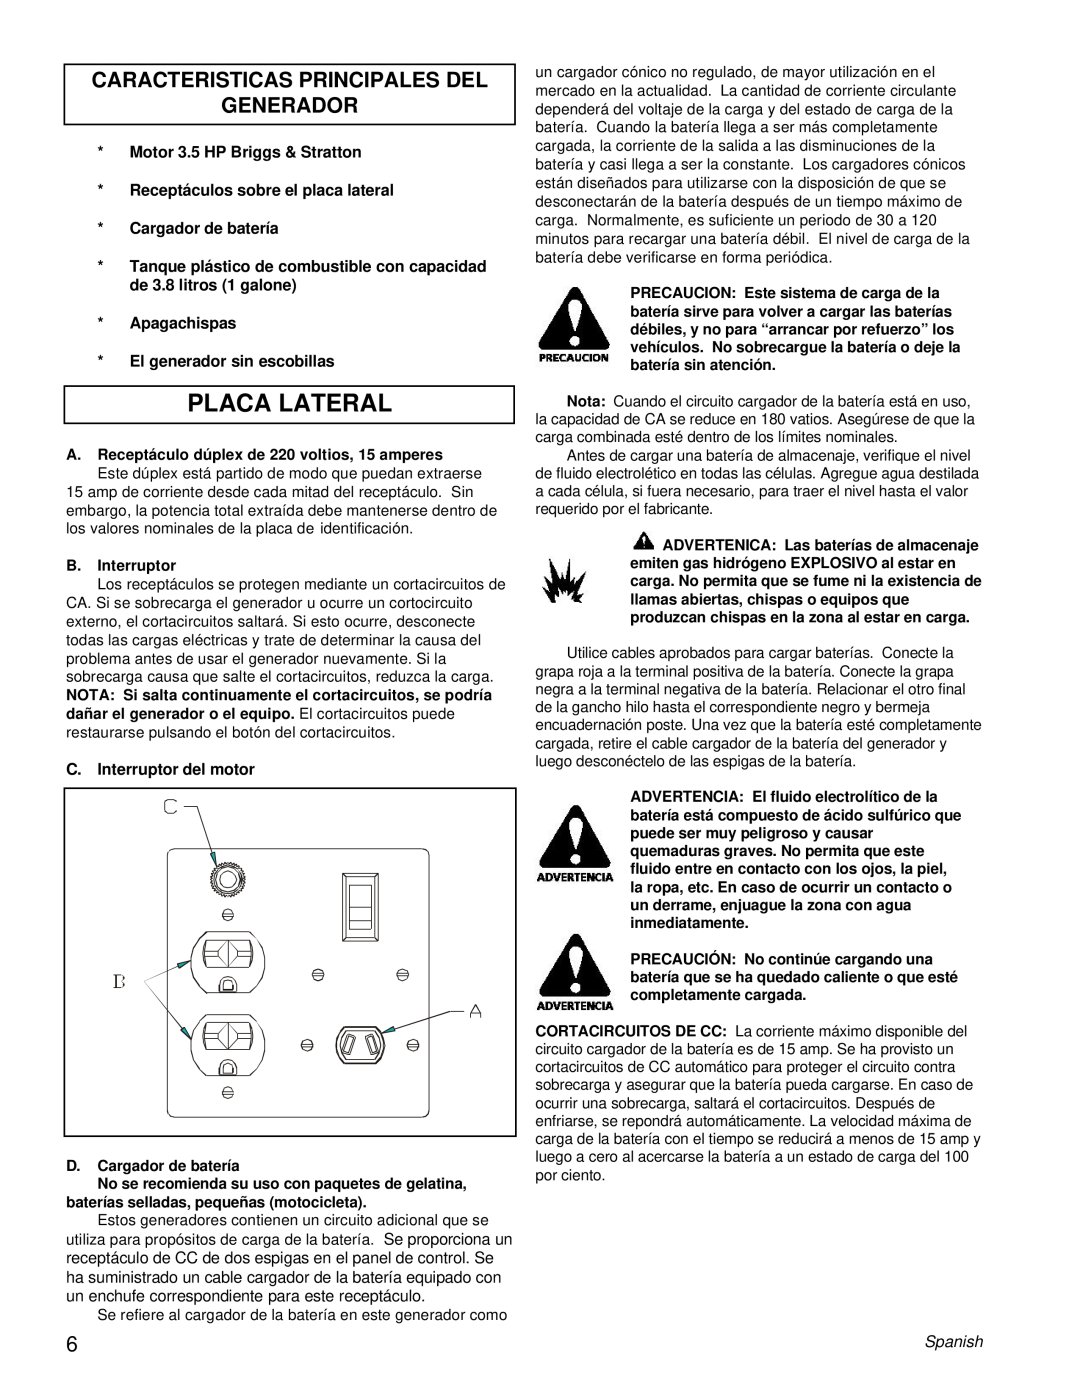 Powermate PE0402042.01 manual Placa Lateral, Caracteristicas Principales Del Generador 